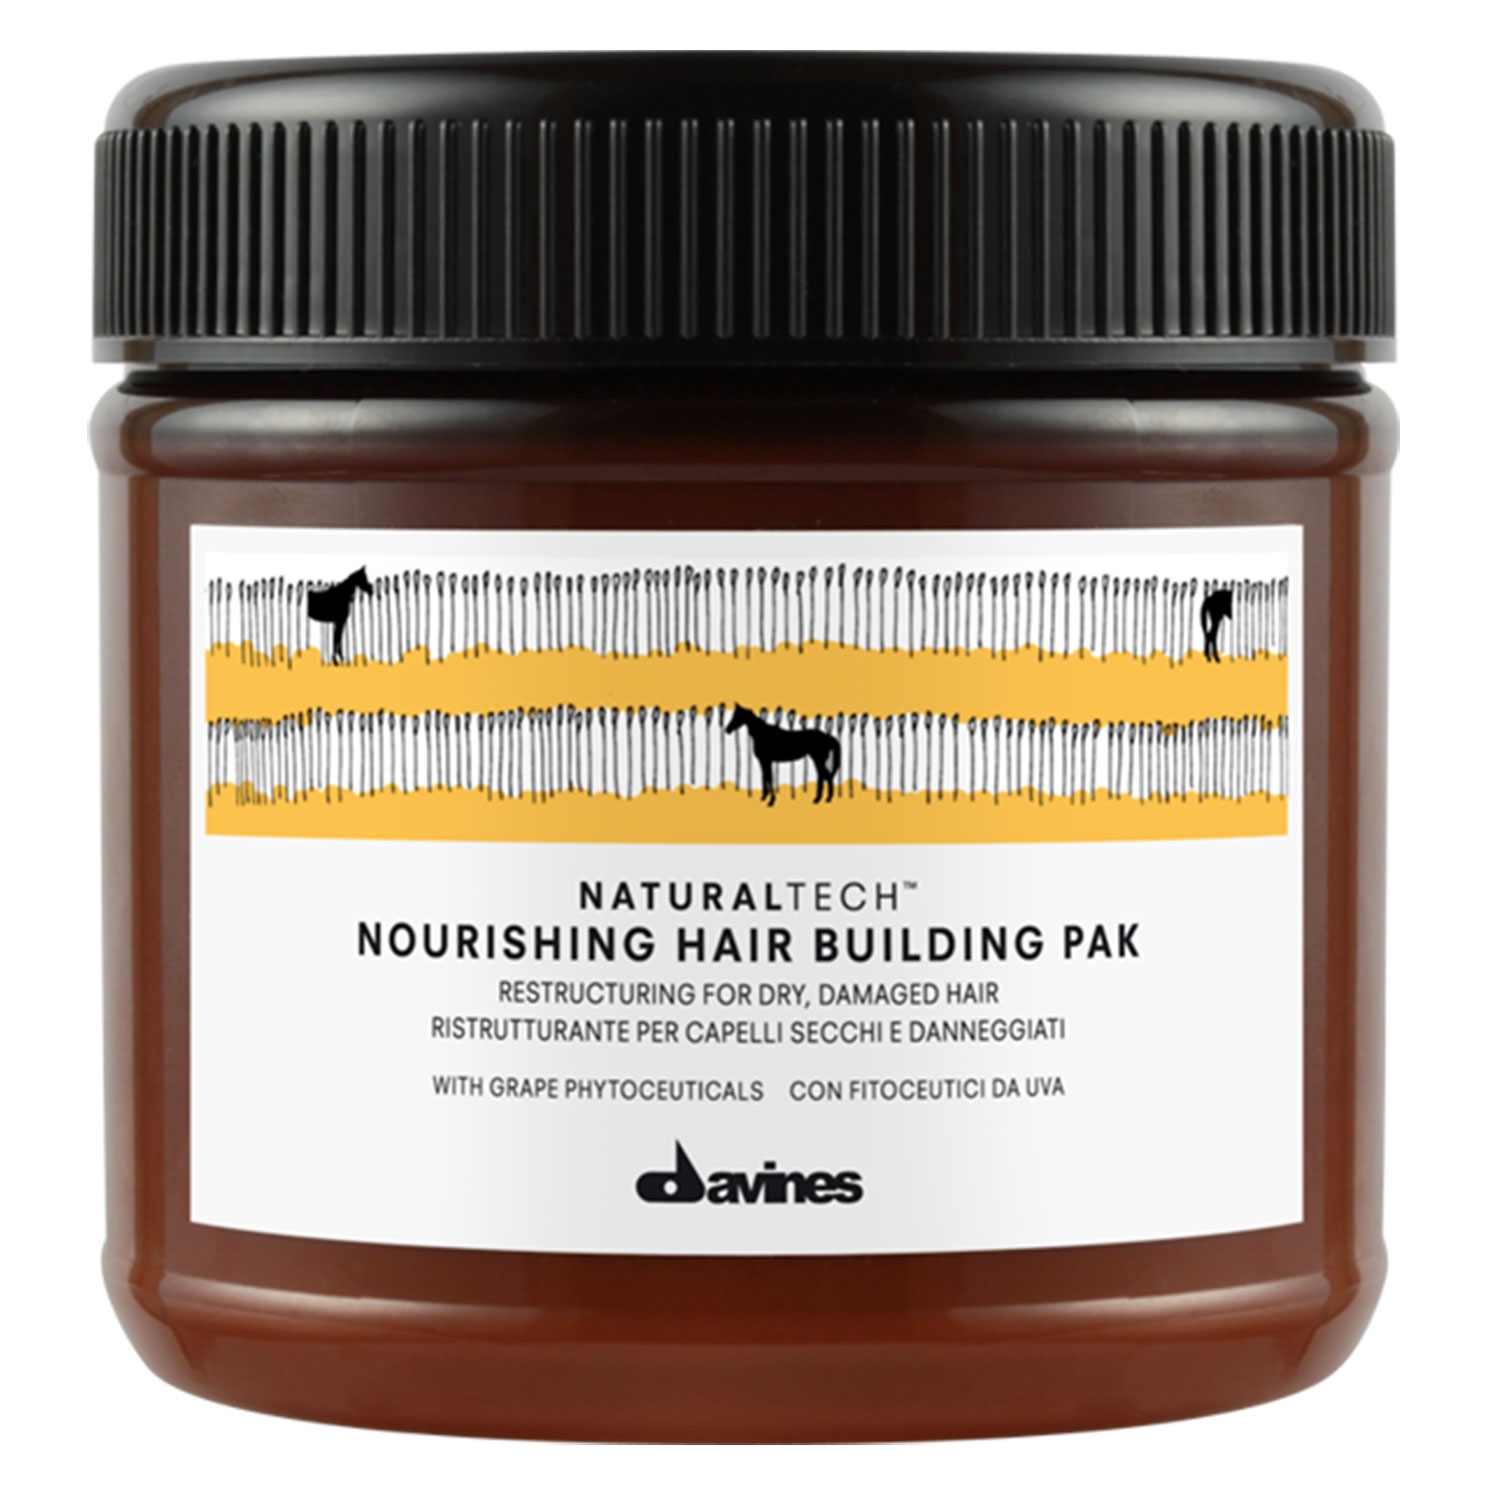 Produktbild von Naturaltech - Nourishing Hair Building Pak